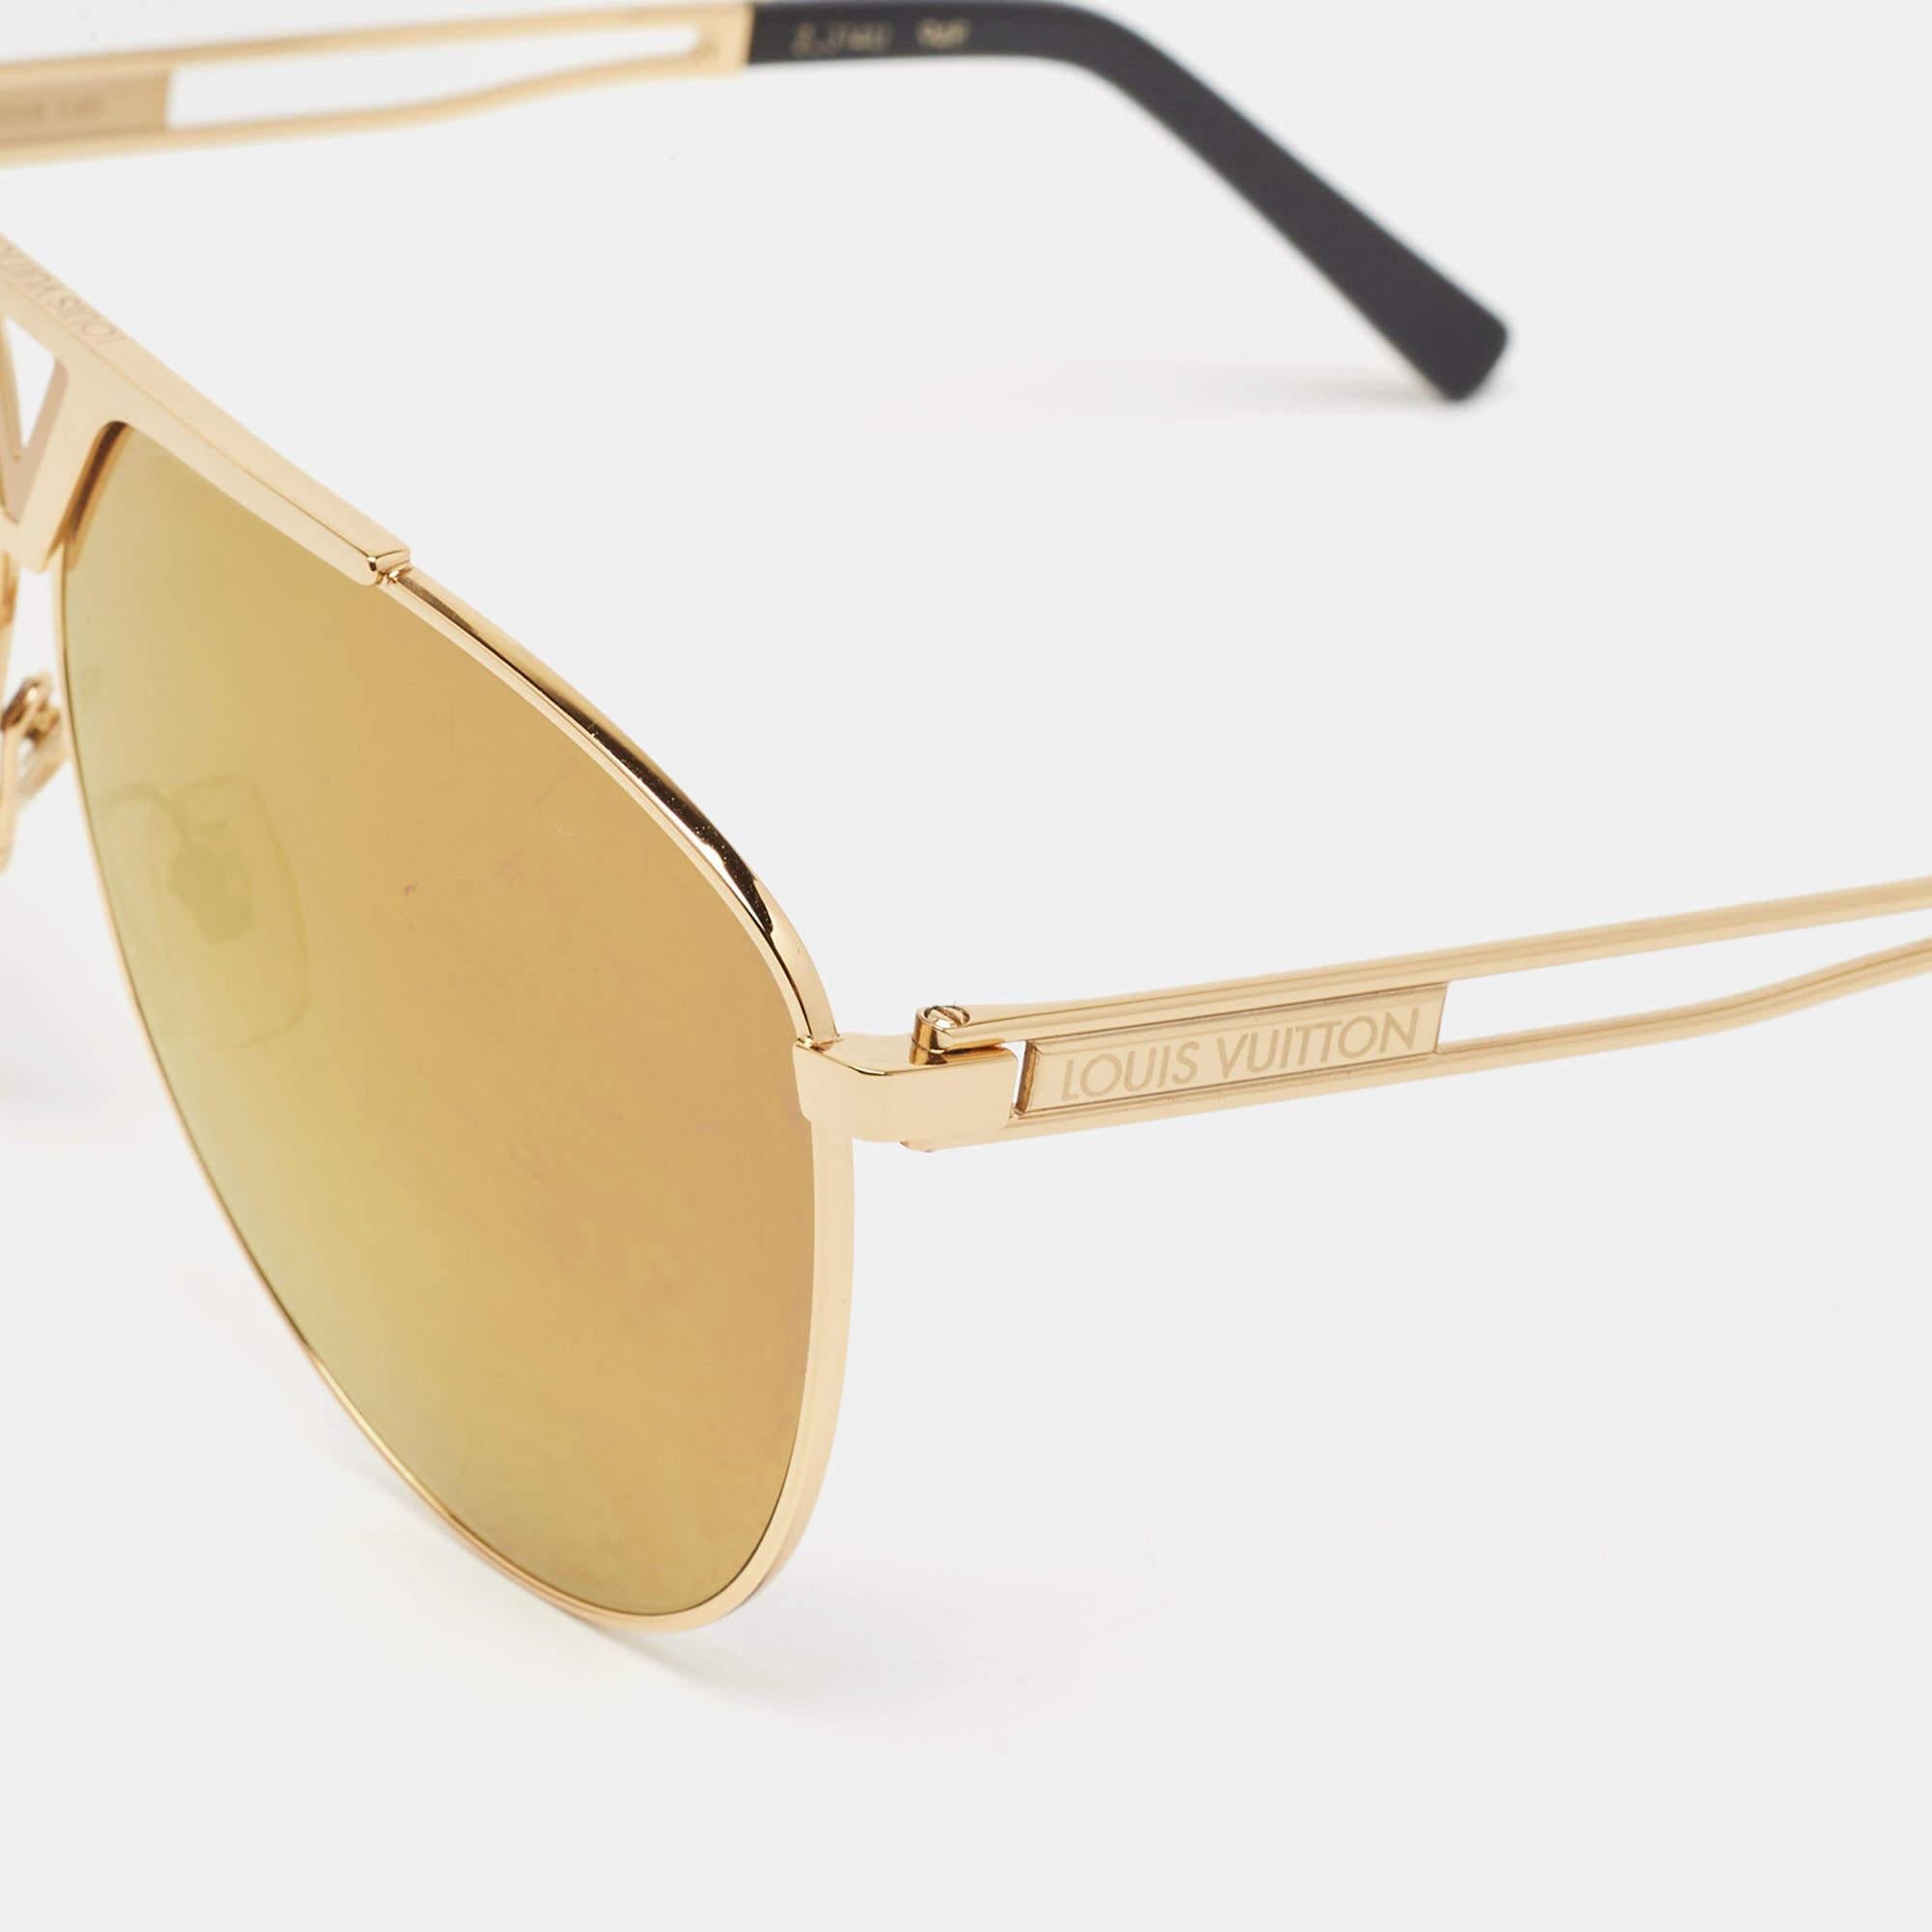 Cette paire de lunettes de soleil Louis Vuitton vous permettra de profiter pleinement des journées ensoleillées. Créées avec expertise, ces lunettes de soleil de luxe sont dotées d'une monture bien conçue et de verres de qualité supérieure qui sont